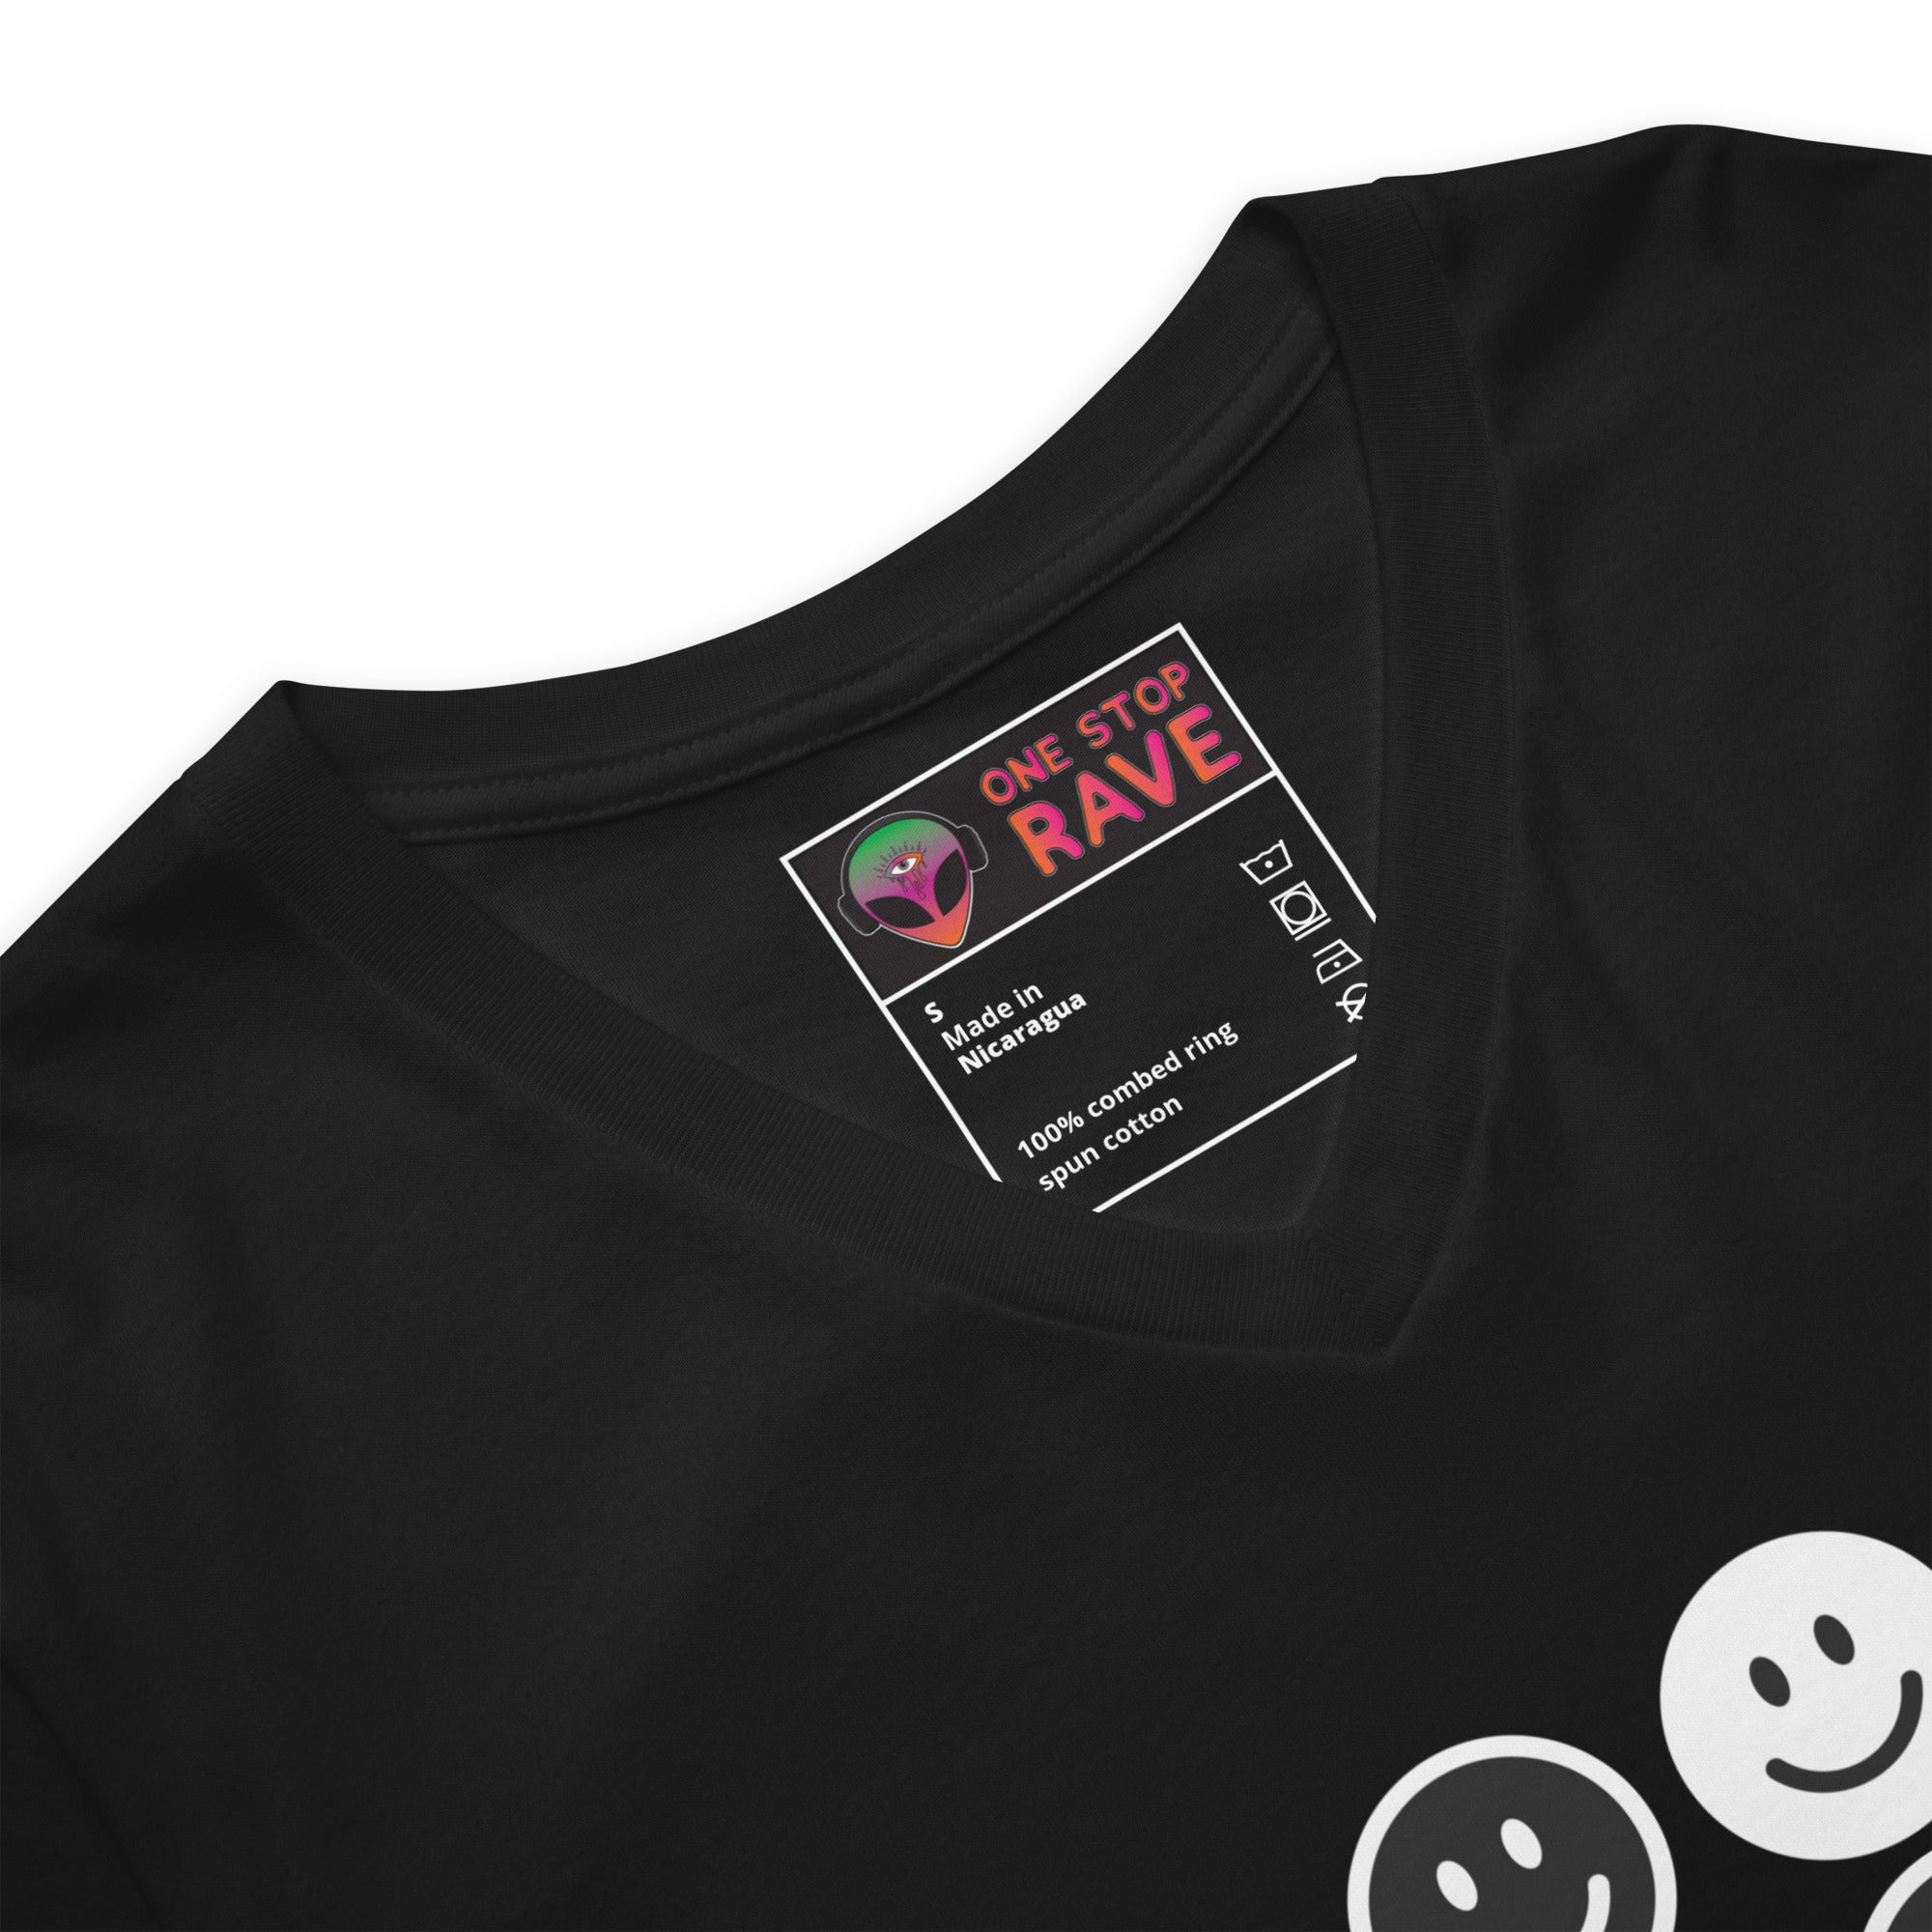 Unisex Short Sleeve All Smiles V-Neck T-Shirt, T-Shirt, - One Stop Rave